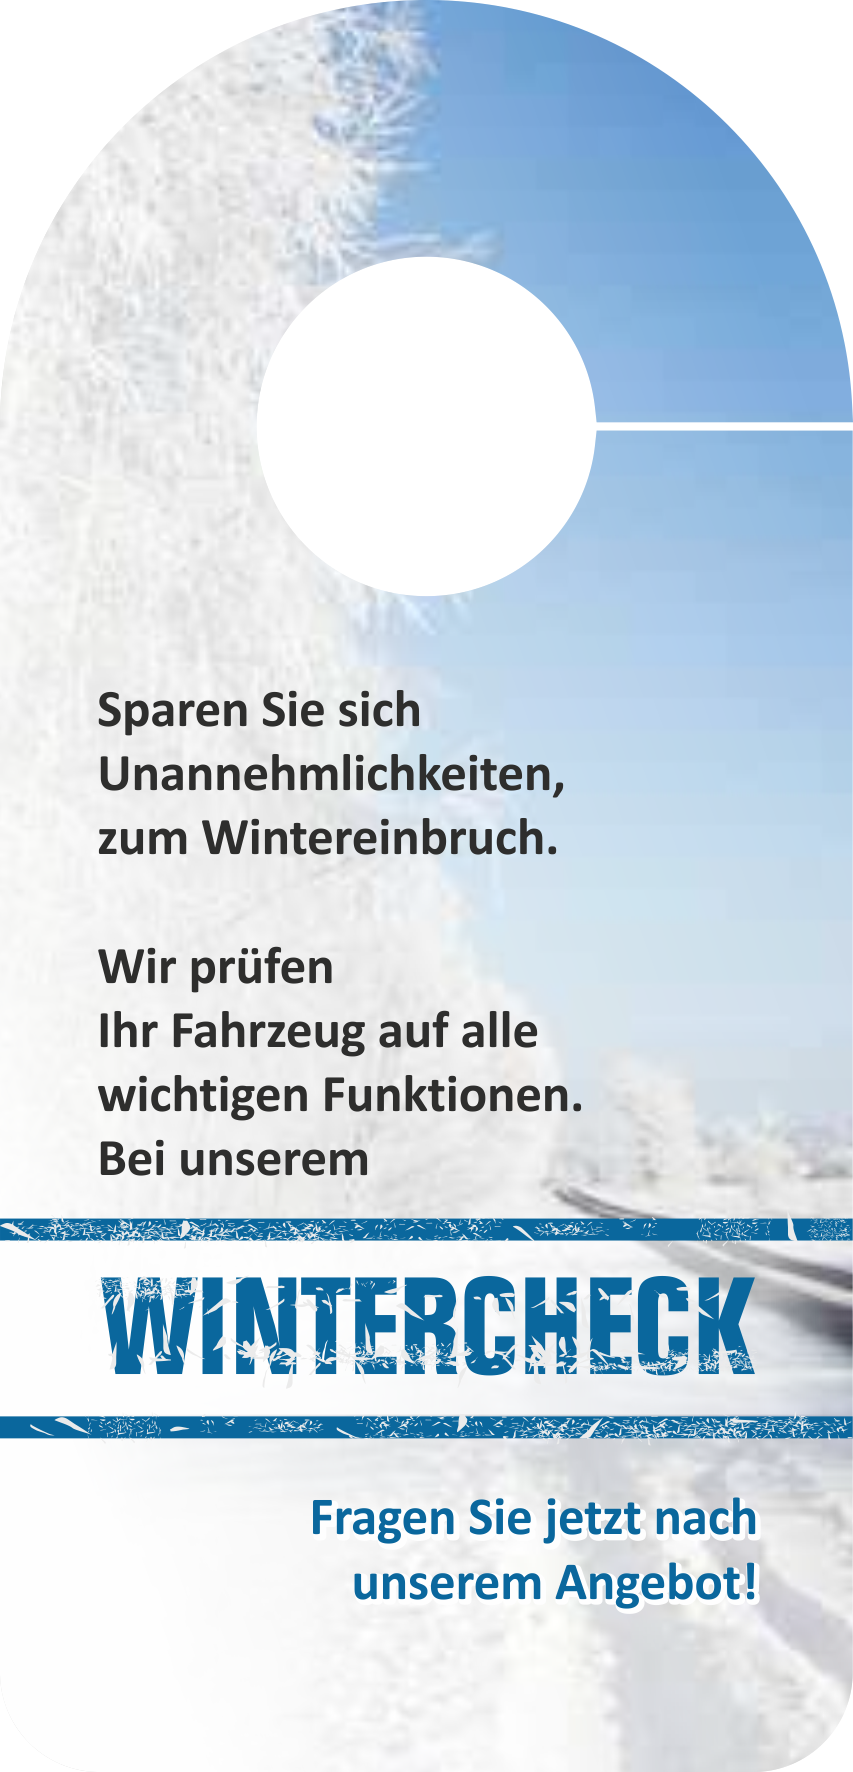 Spiegelanhänger "Wintercheck Angebot 2"